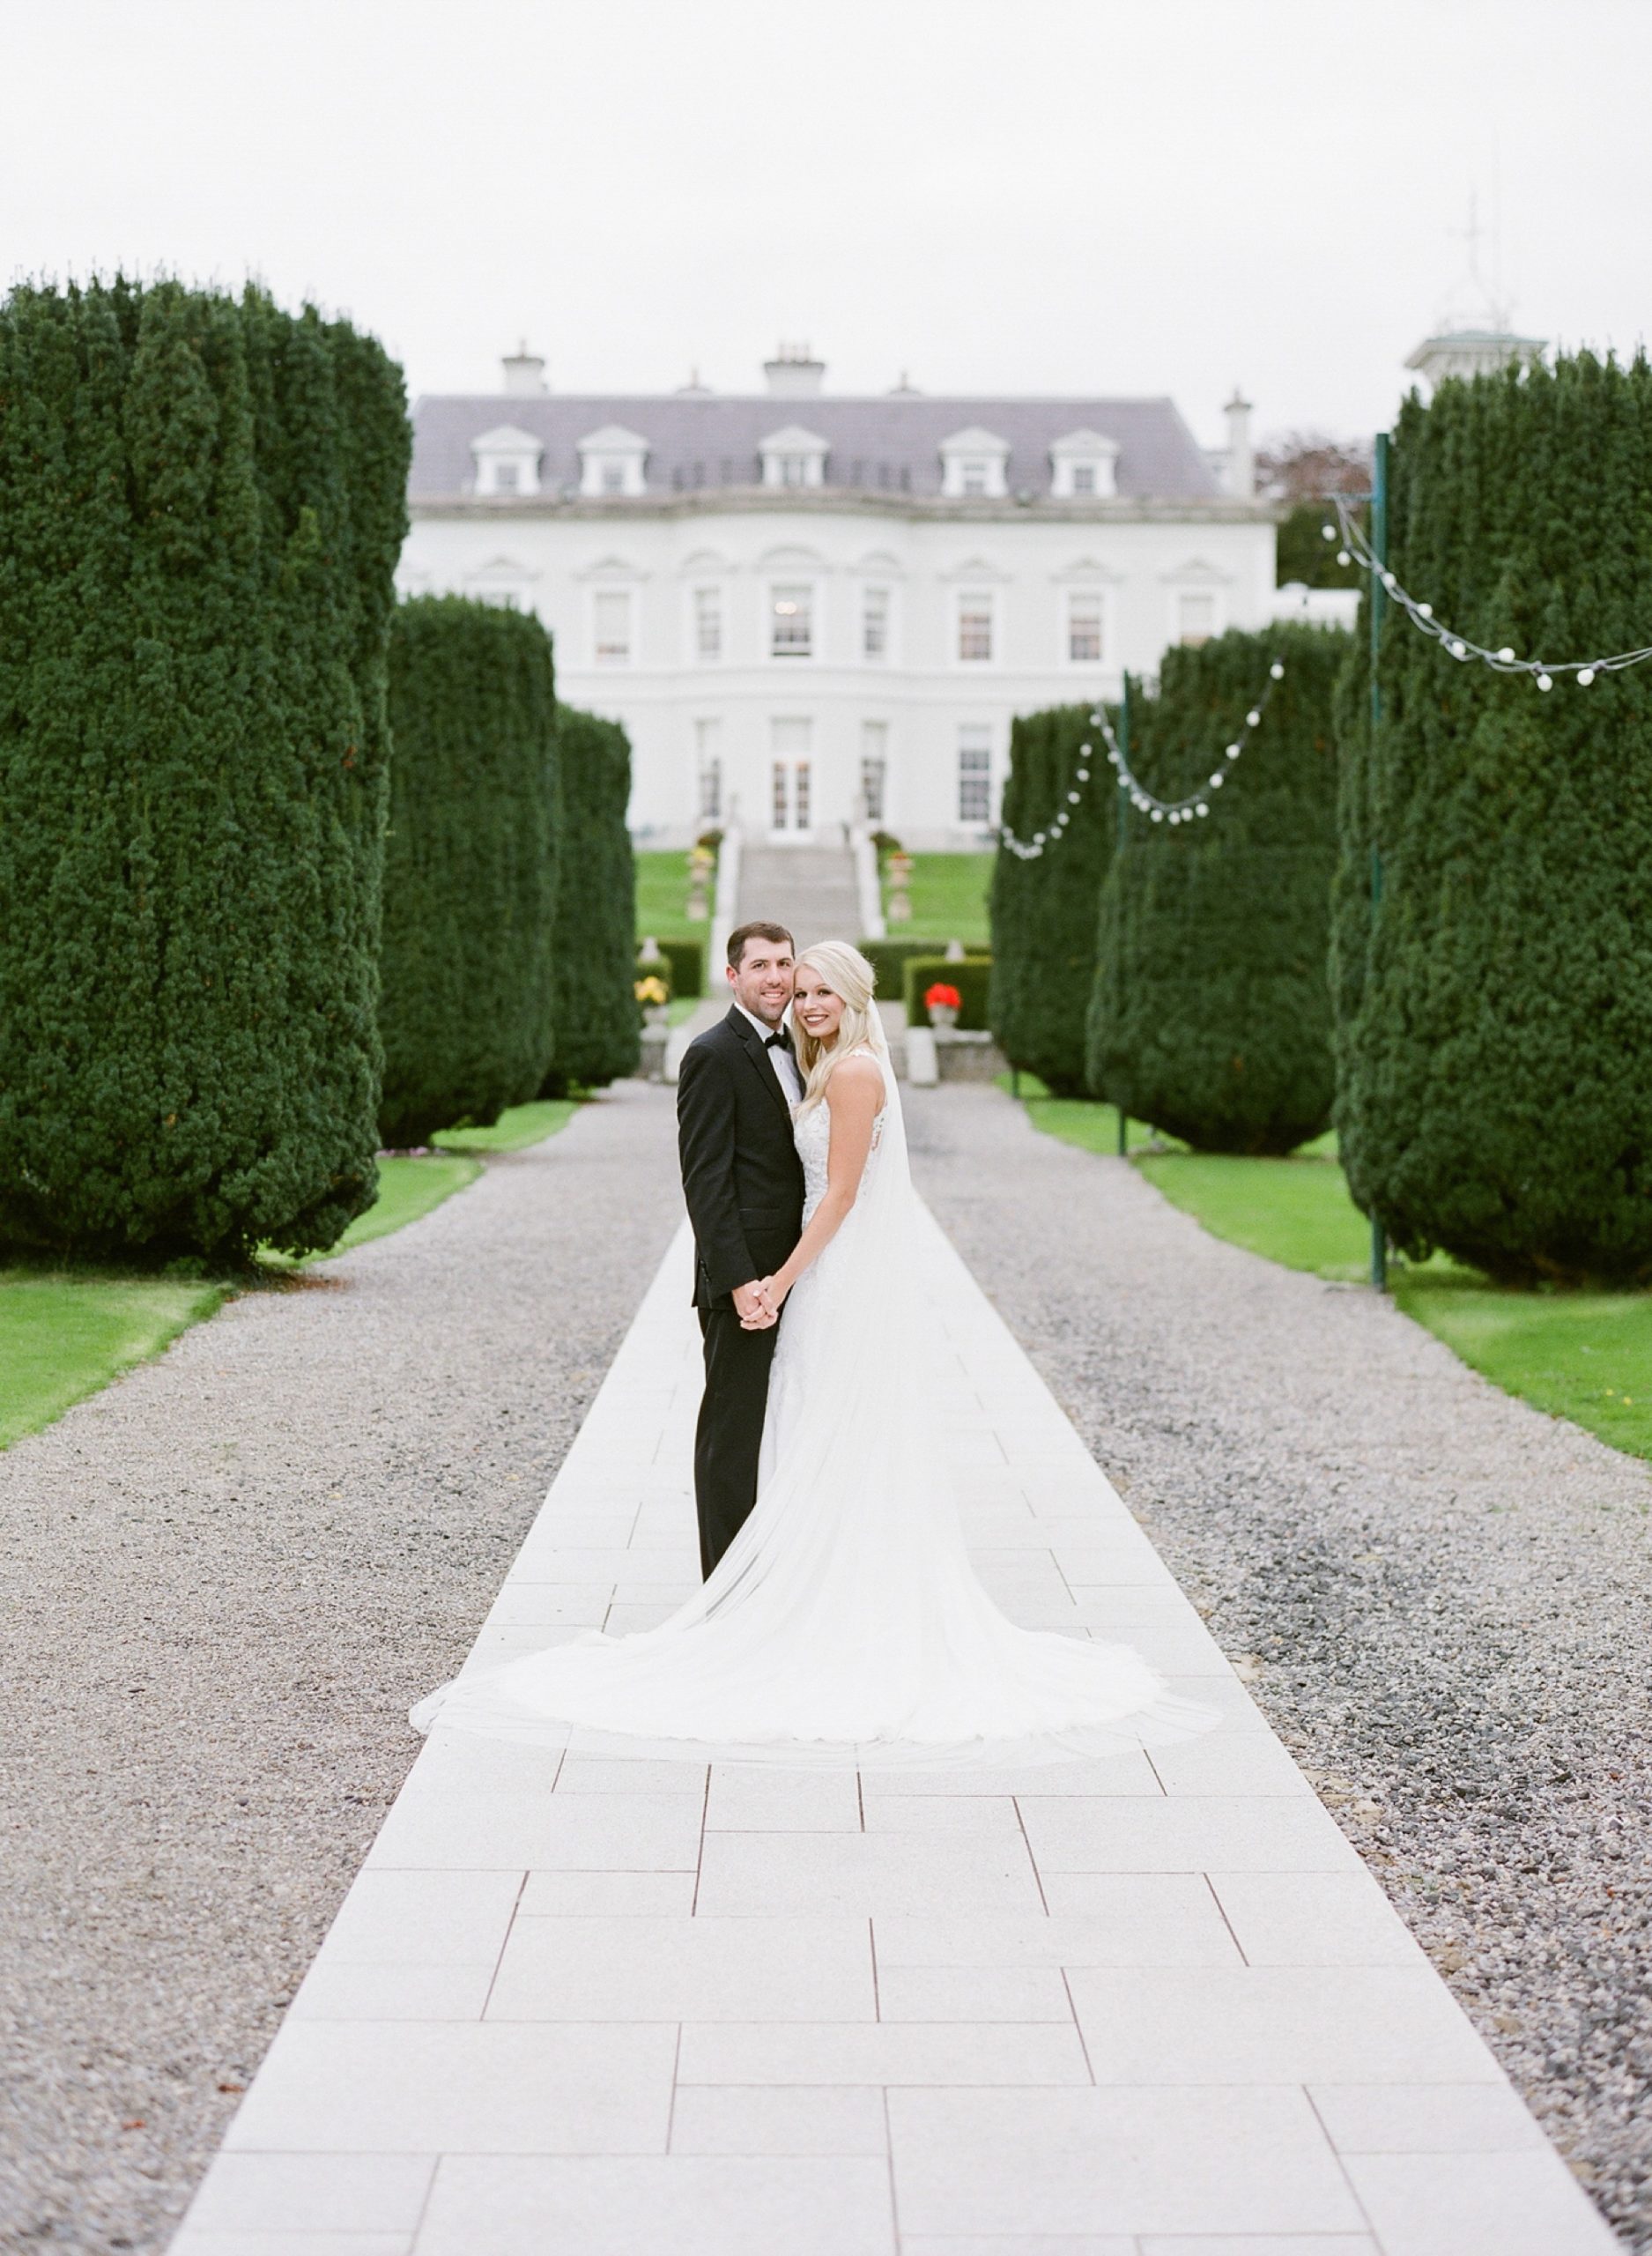 Jessie-Barksdale-Photography_Ireland-destination-wedding-at-The-K-Club-Resort__0020.jpg